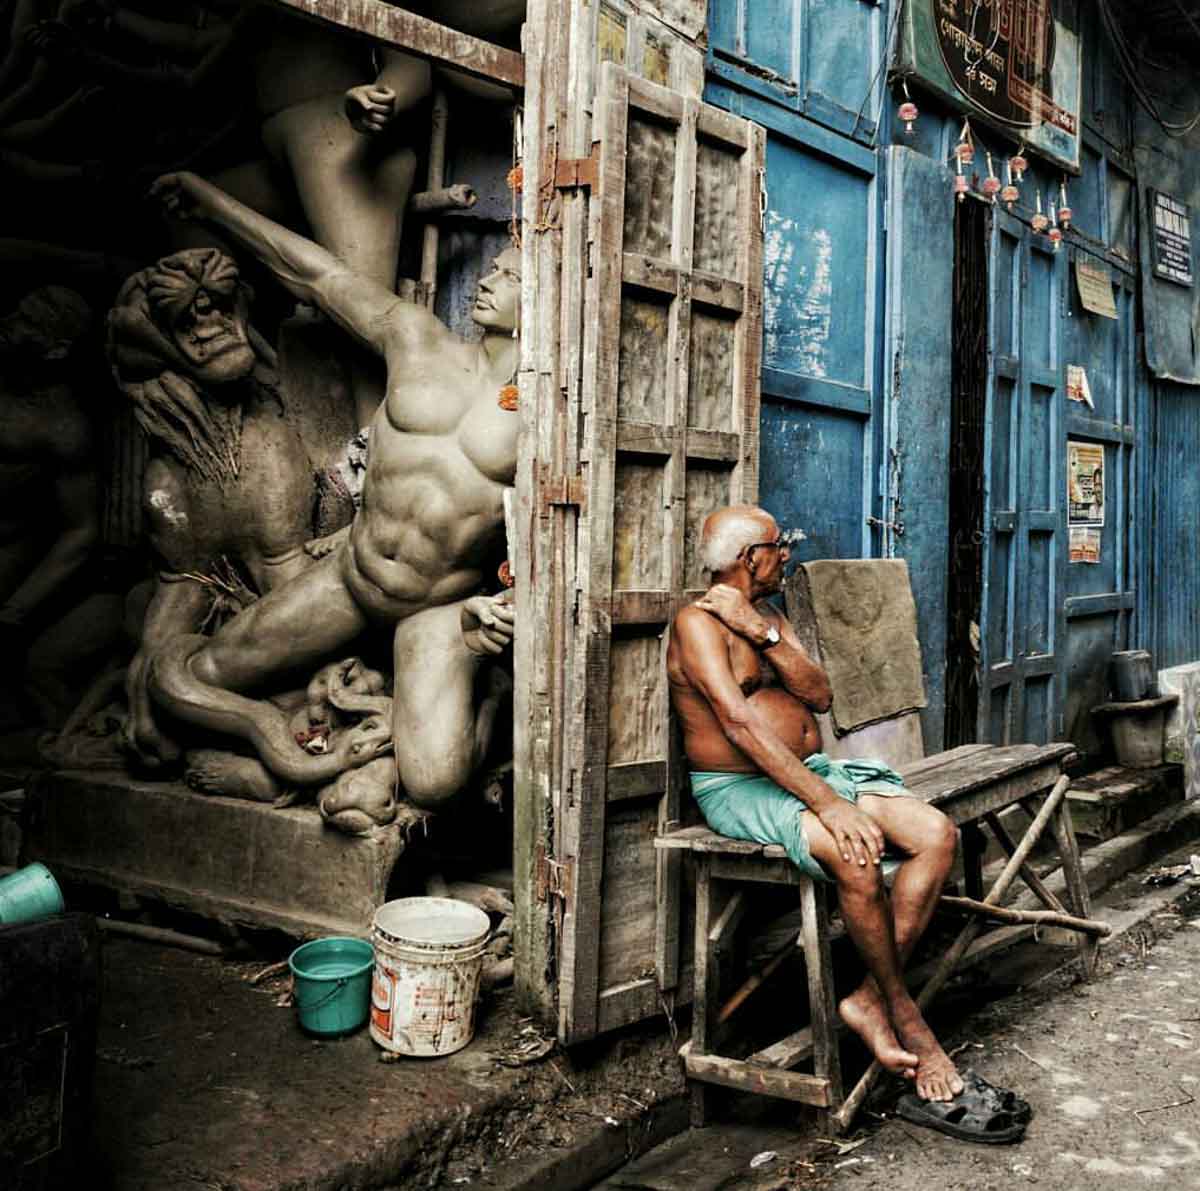 An idol maker in Kumartuli